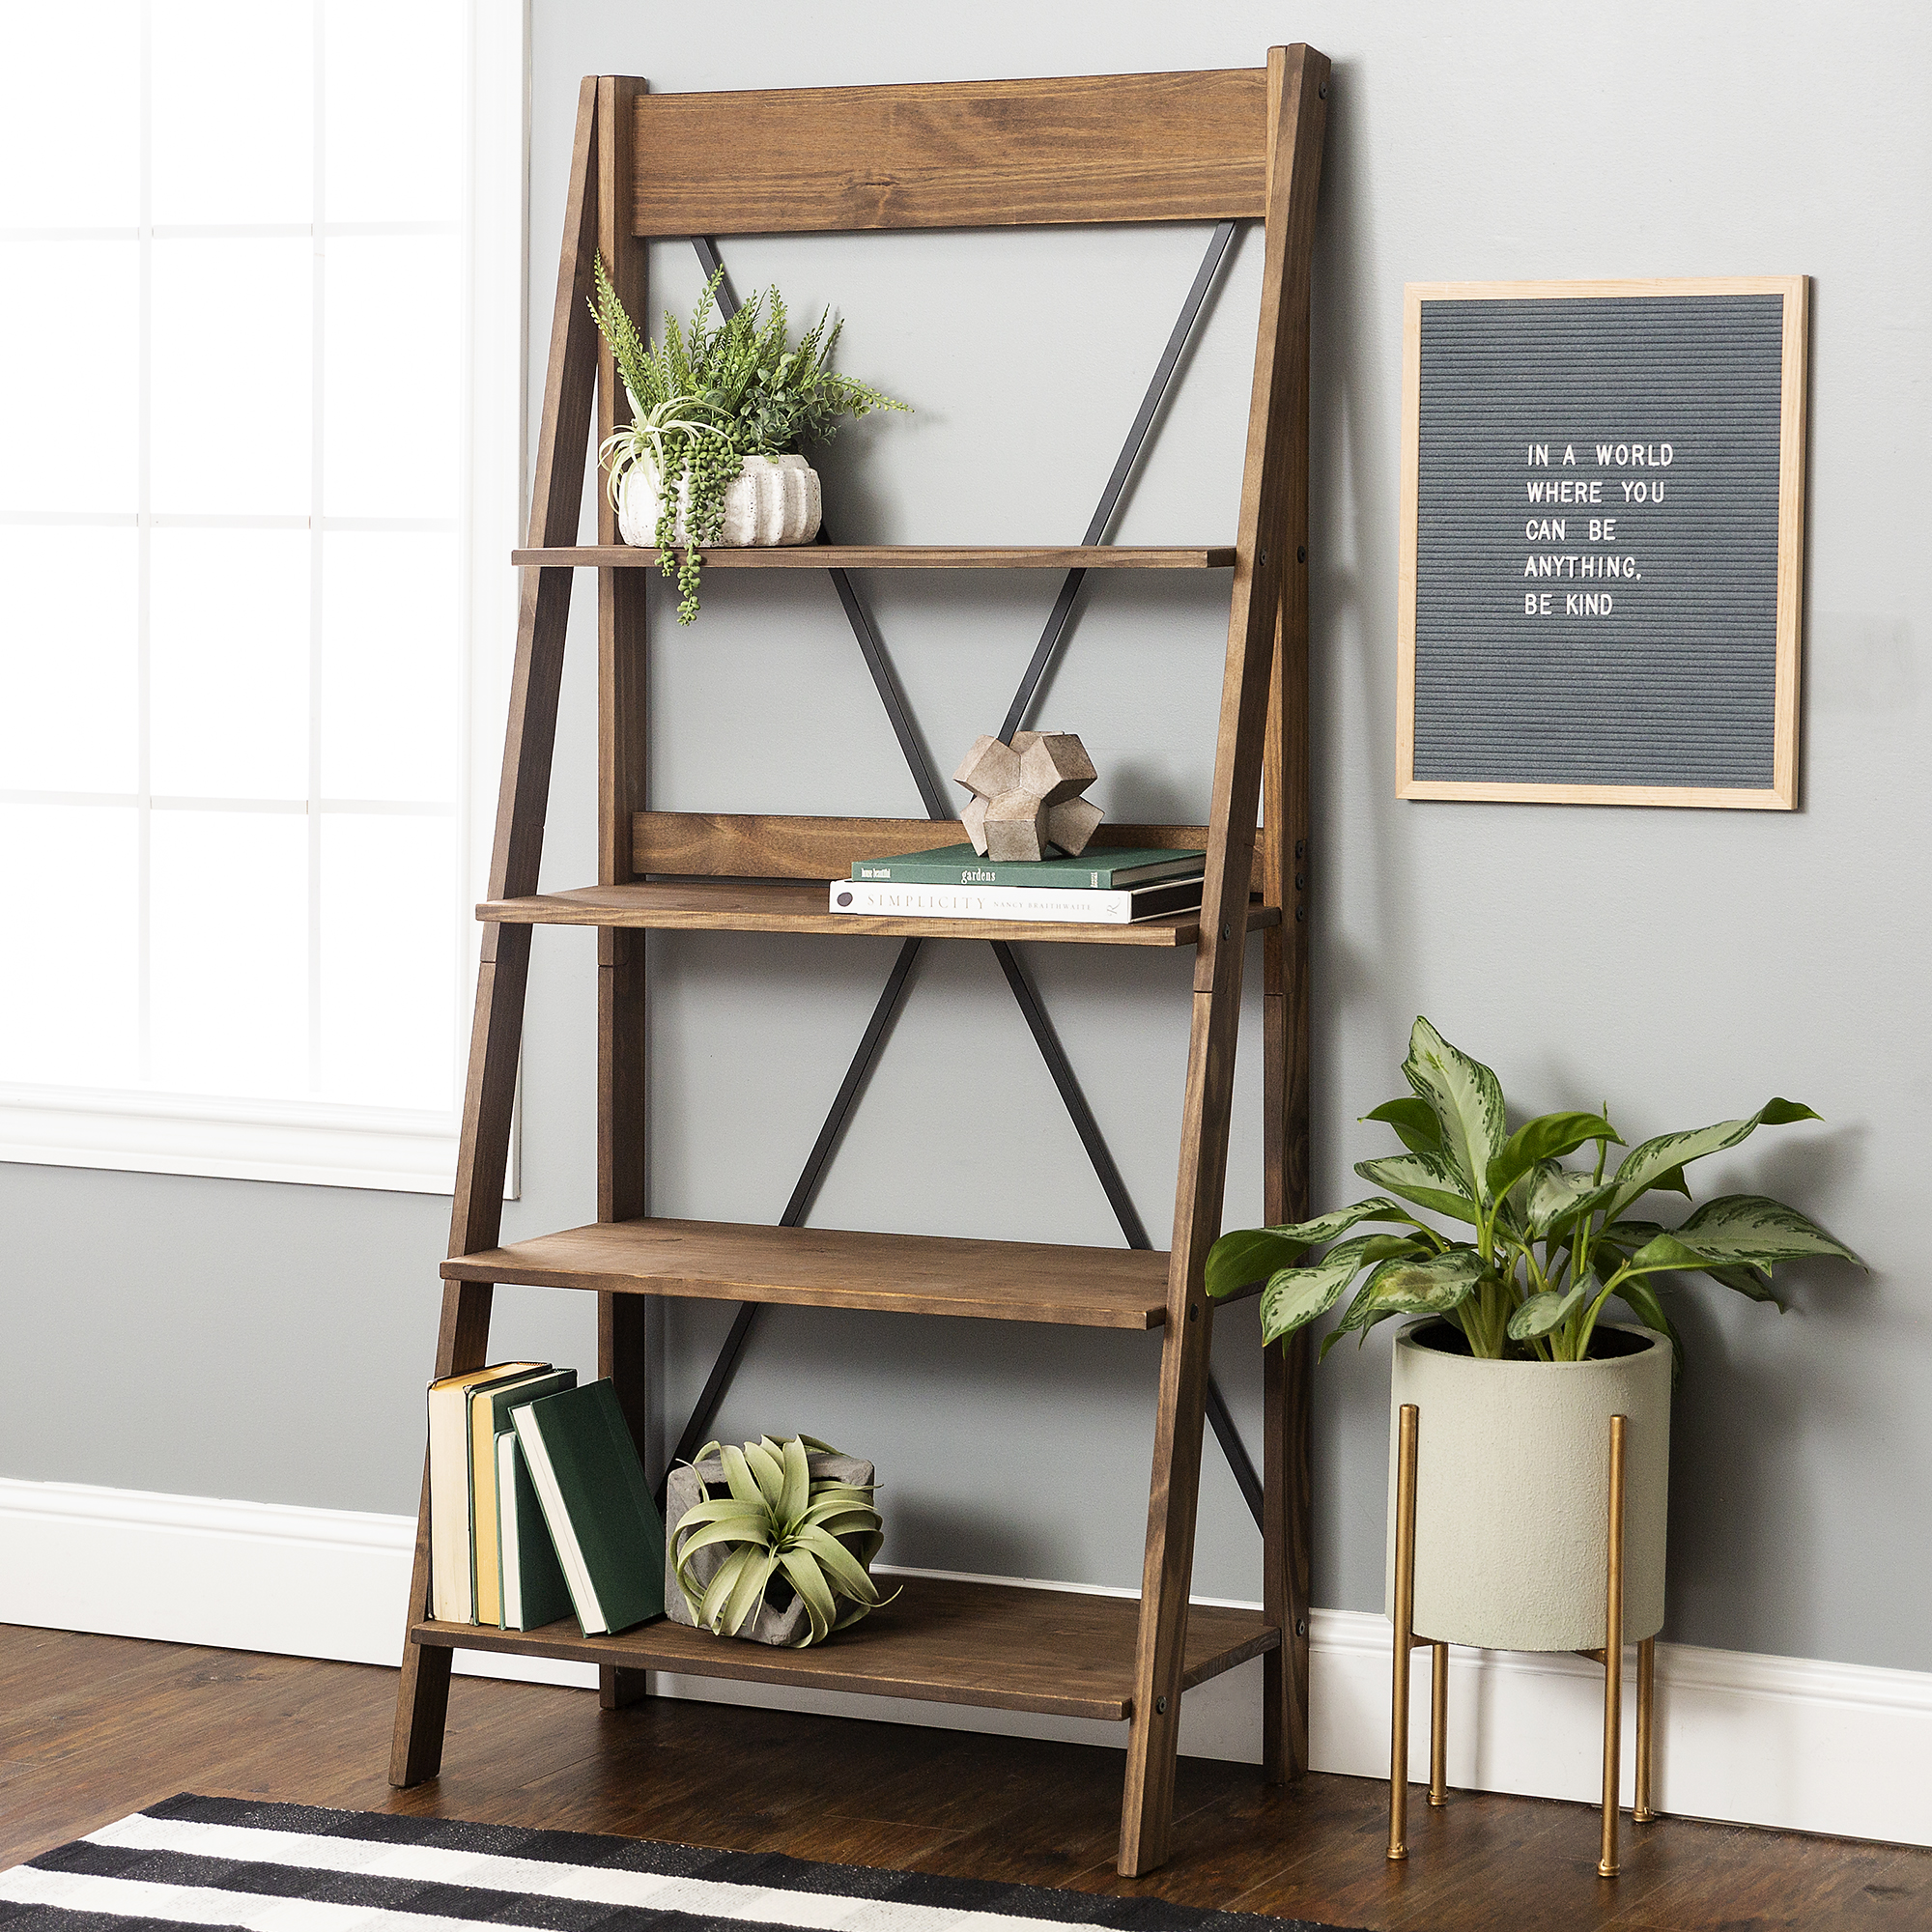 Walker Edison Solid Wood 4-Shelf Ladder Bookshelf, Brown - image 1 of 16